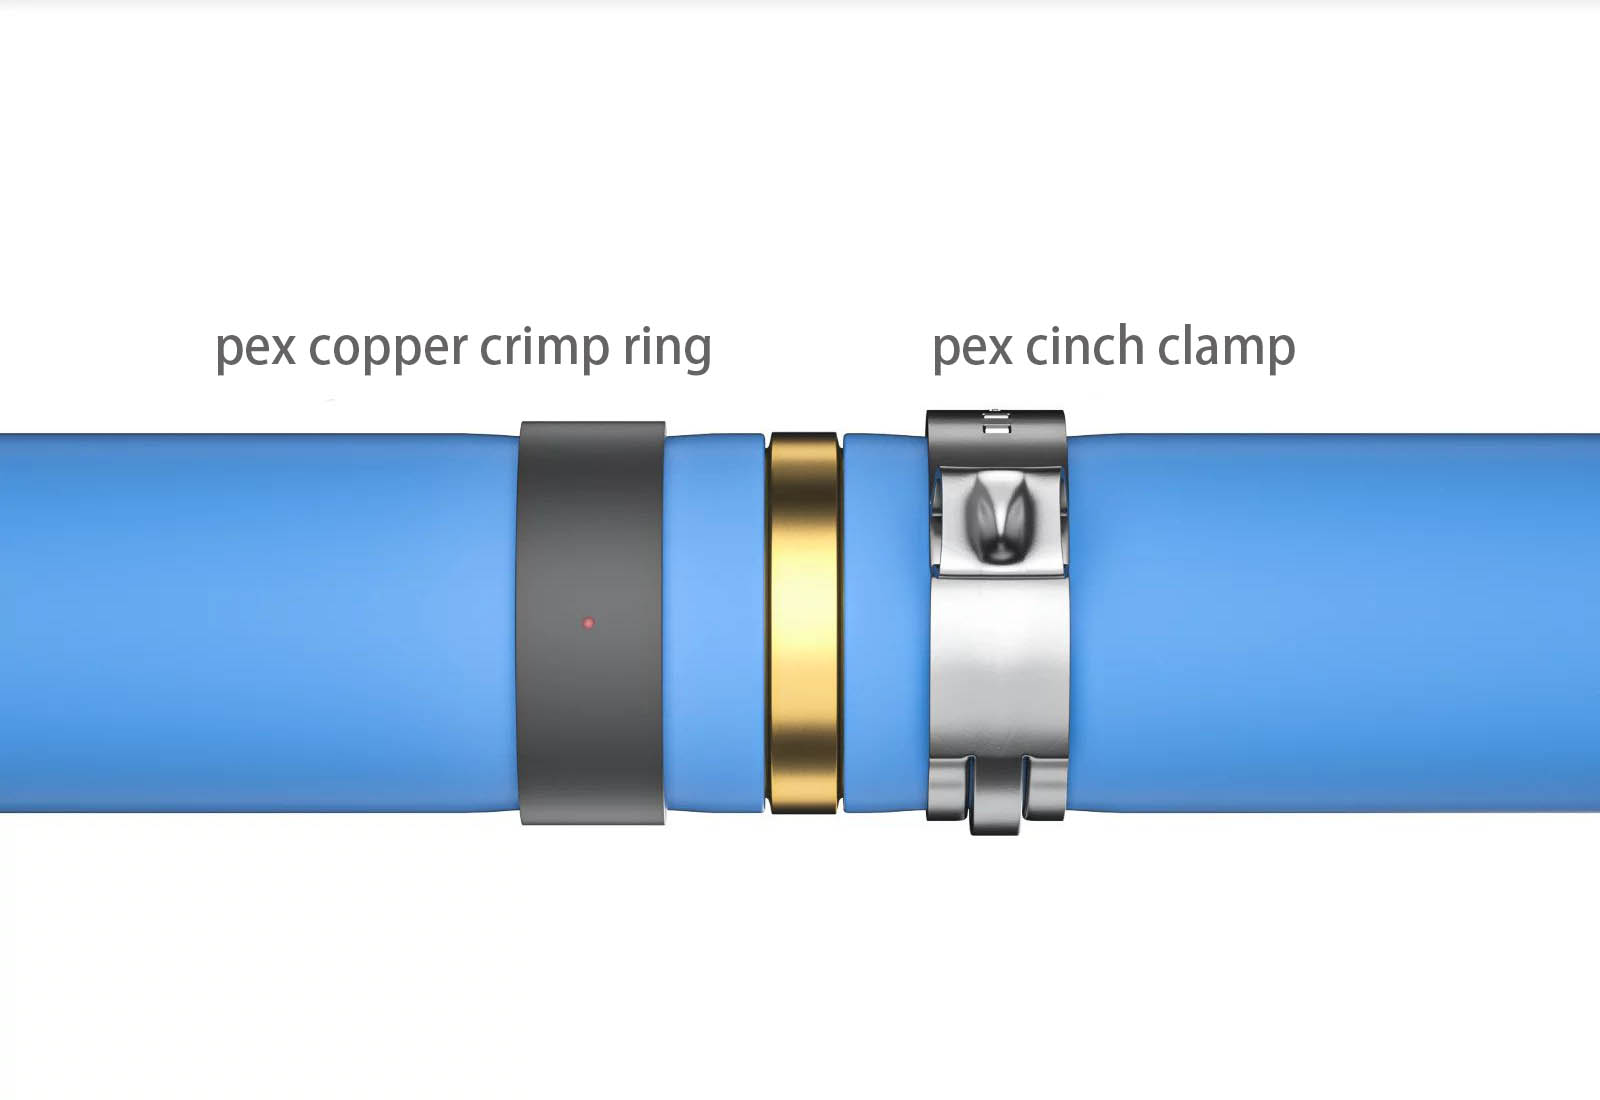 pex crimp ring vs cinch clamp